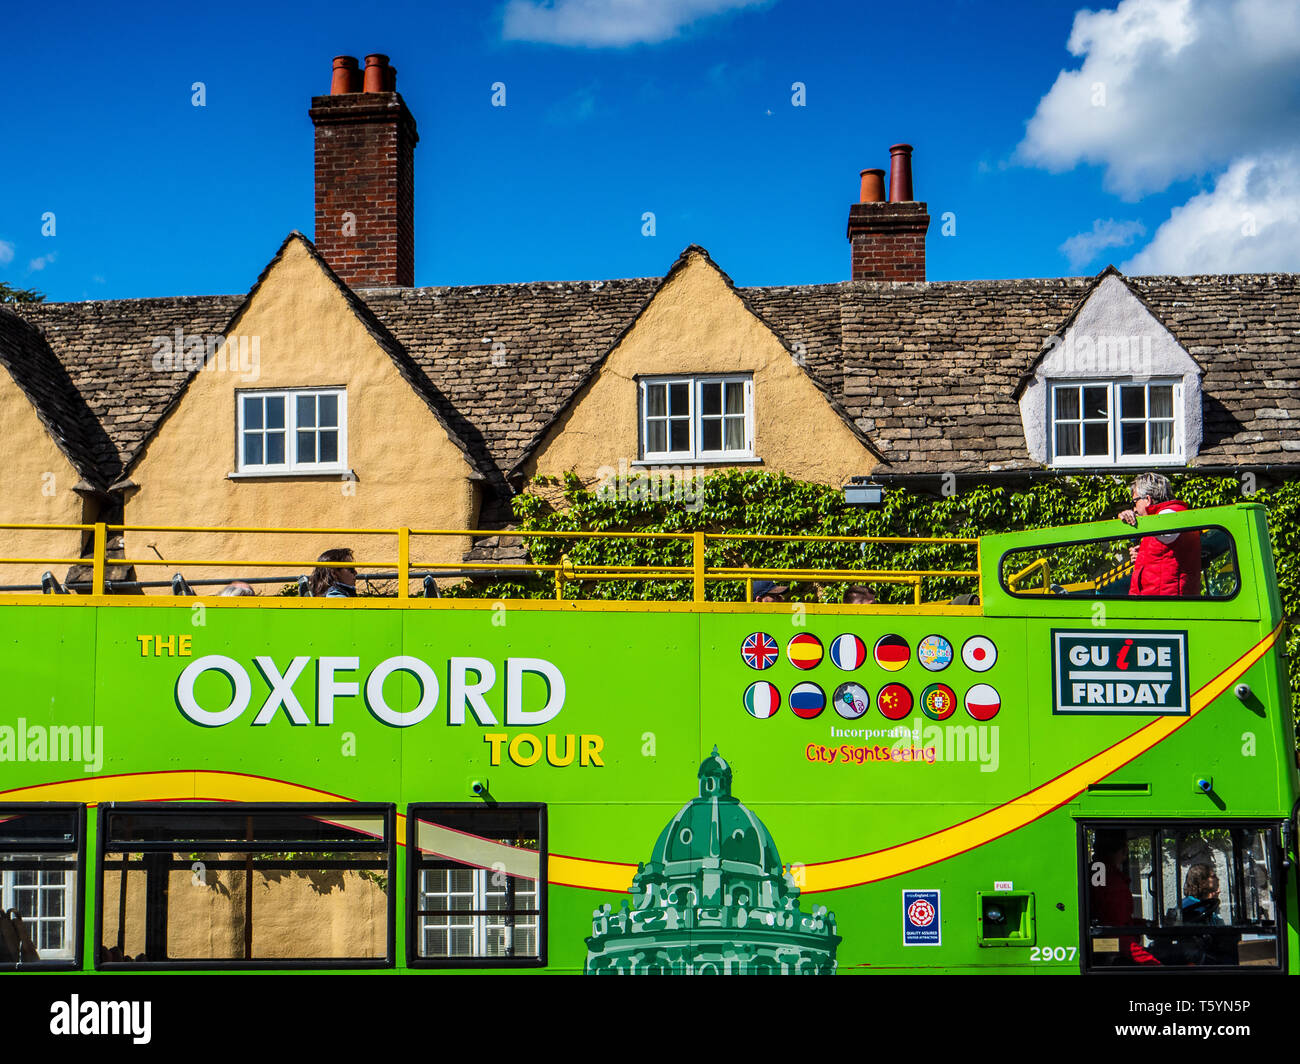 Turismo - Oxford Oxford excursión en autobús en el centro de Oxford Foto de stock